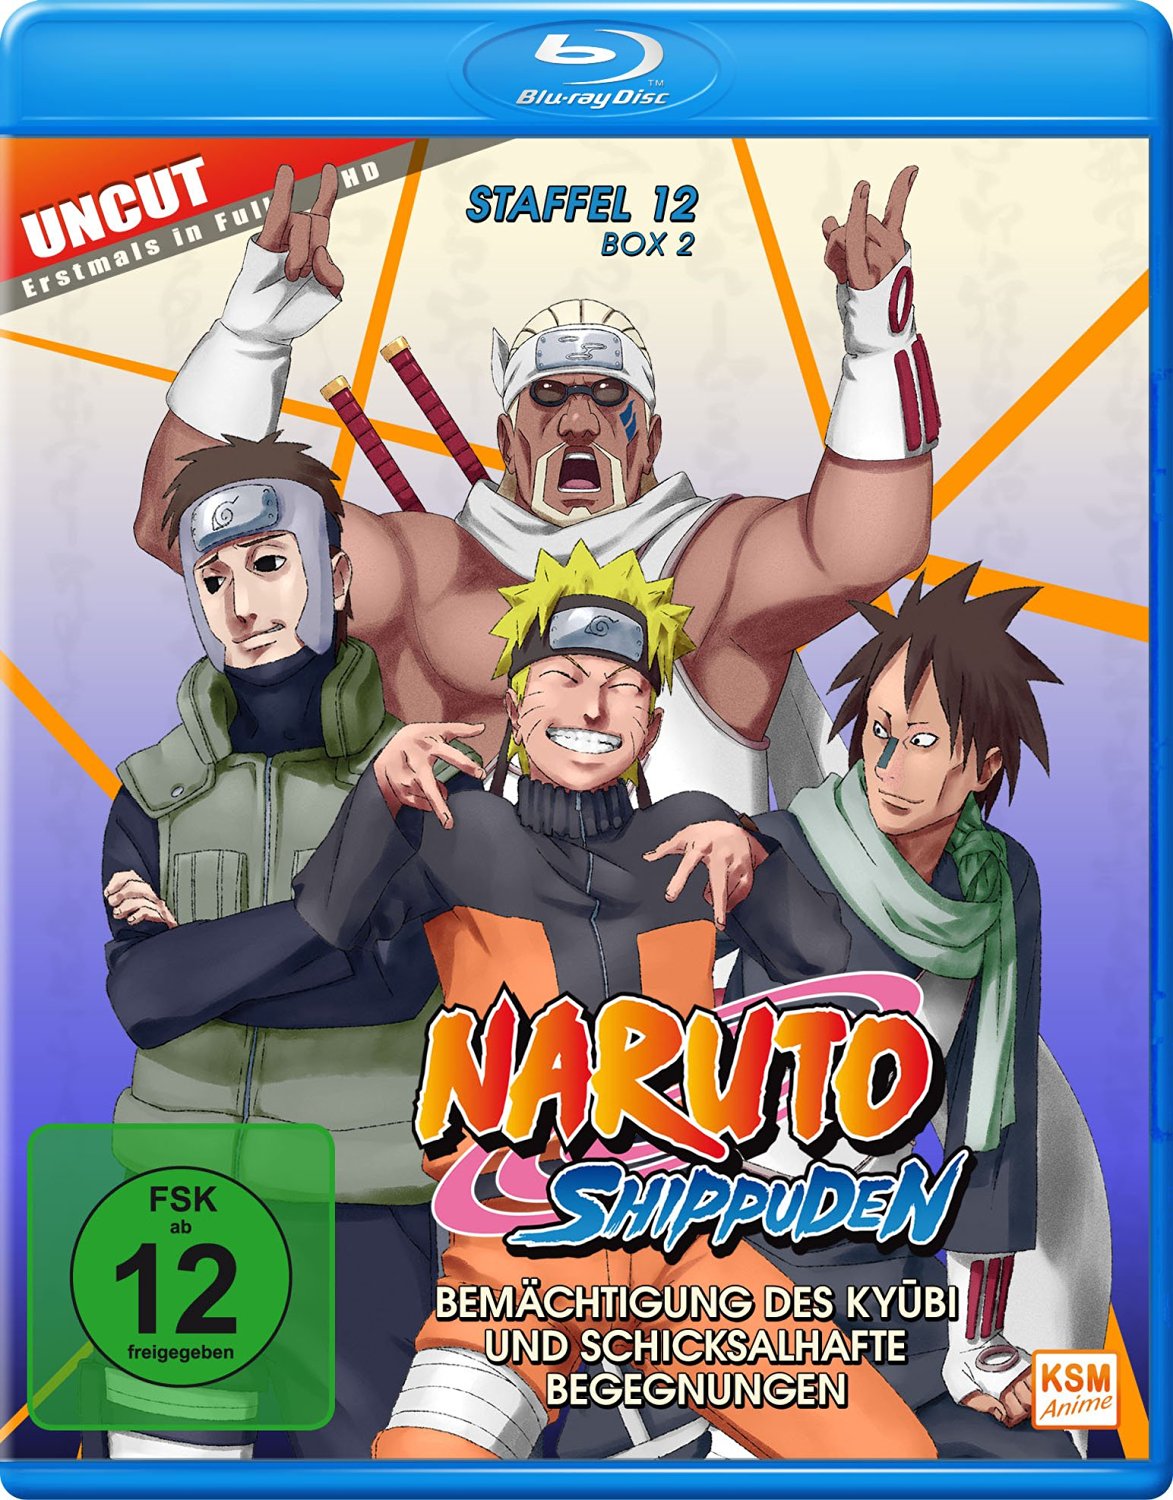 Naruto Shippuden - Staffel 12 Box 2: Episode 481-495 (uncut) Blu-ray